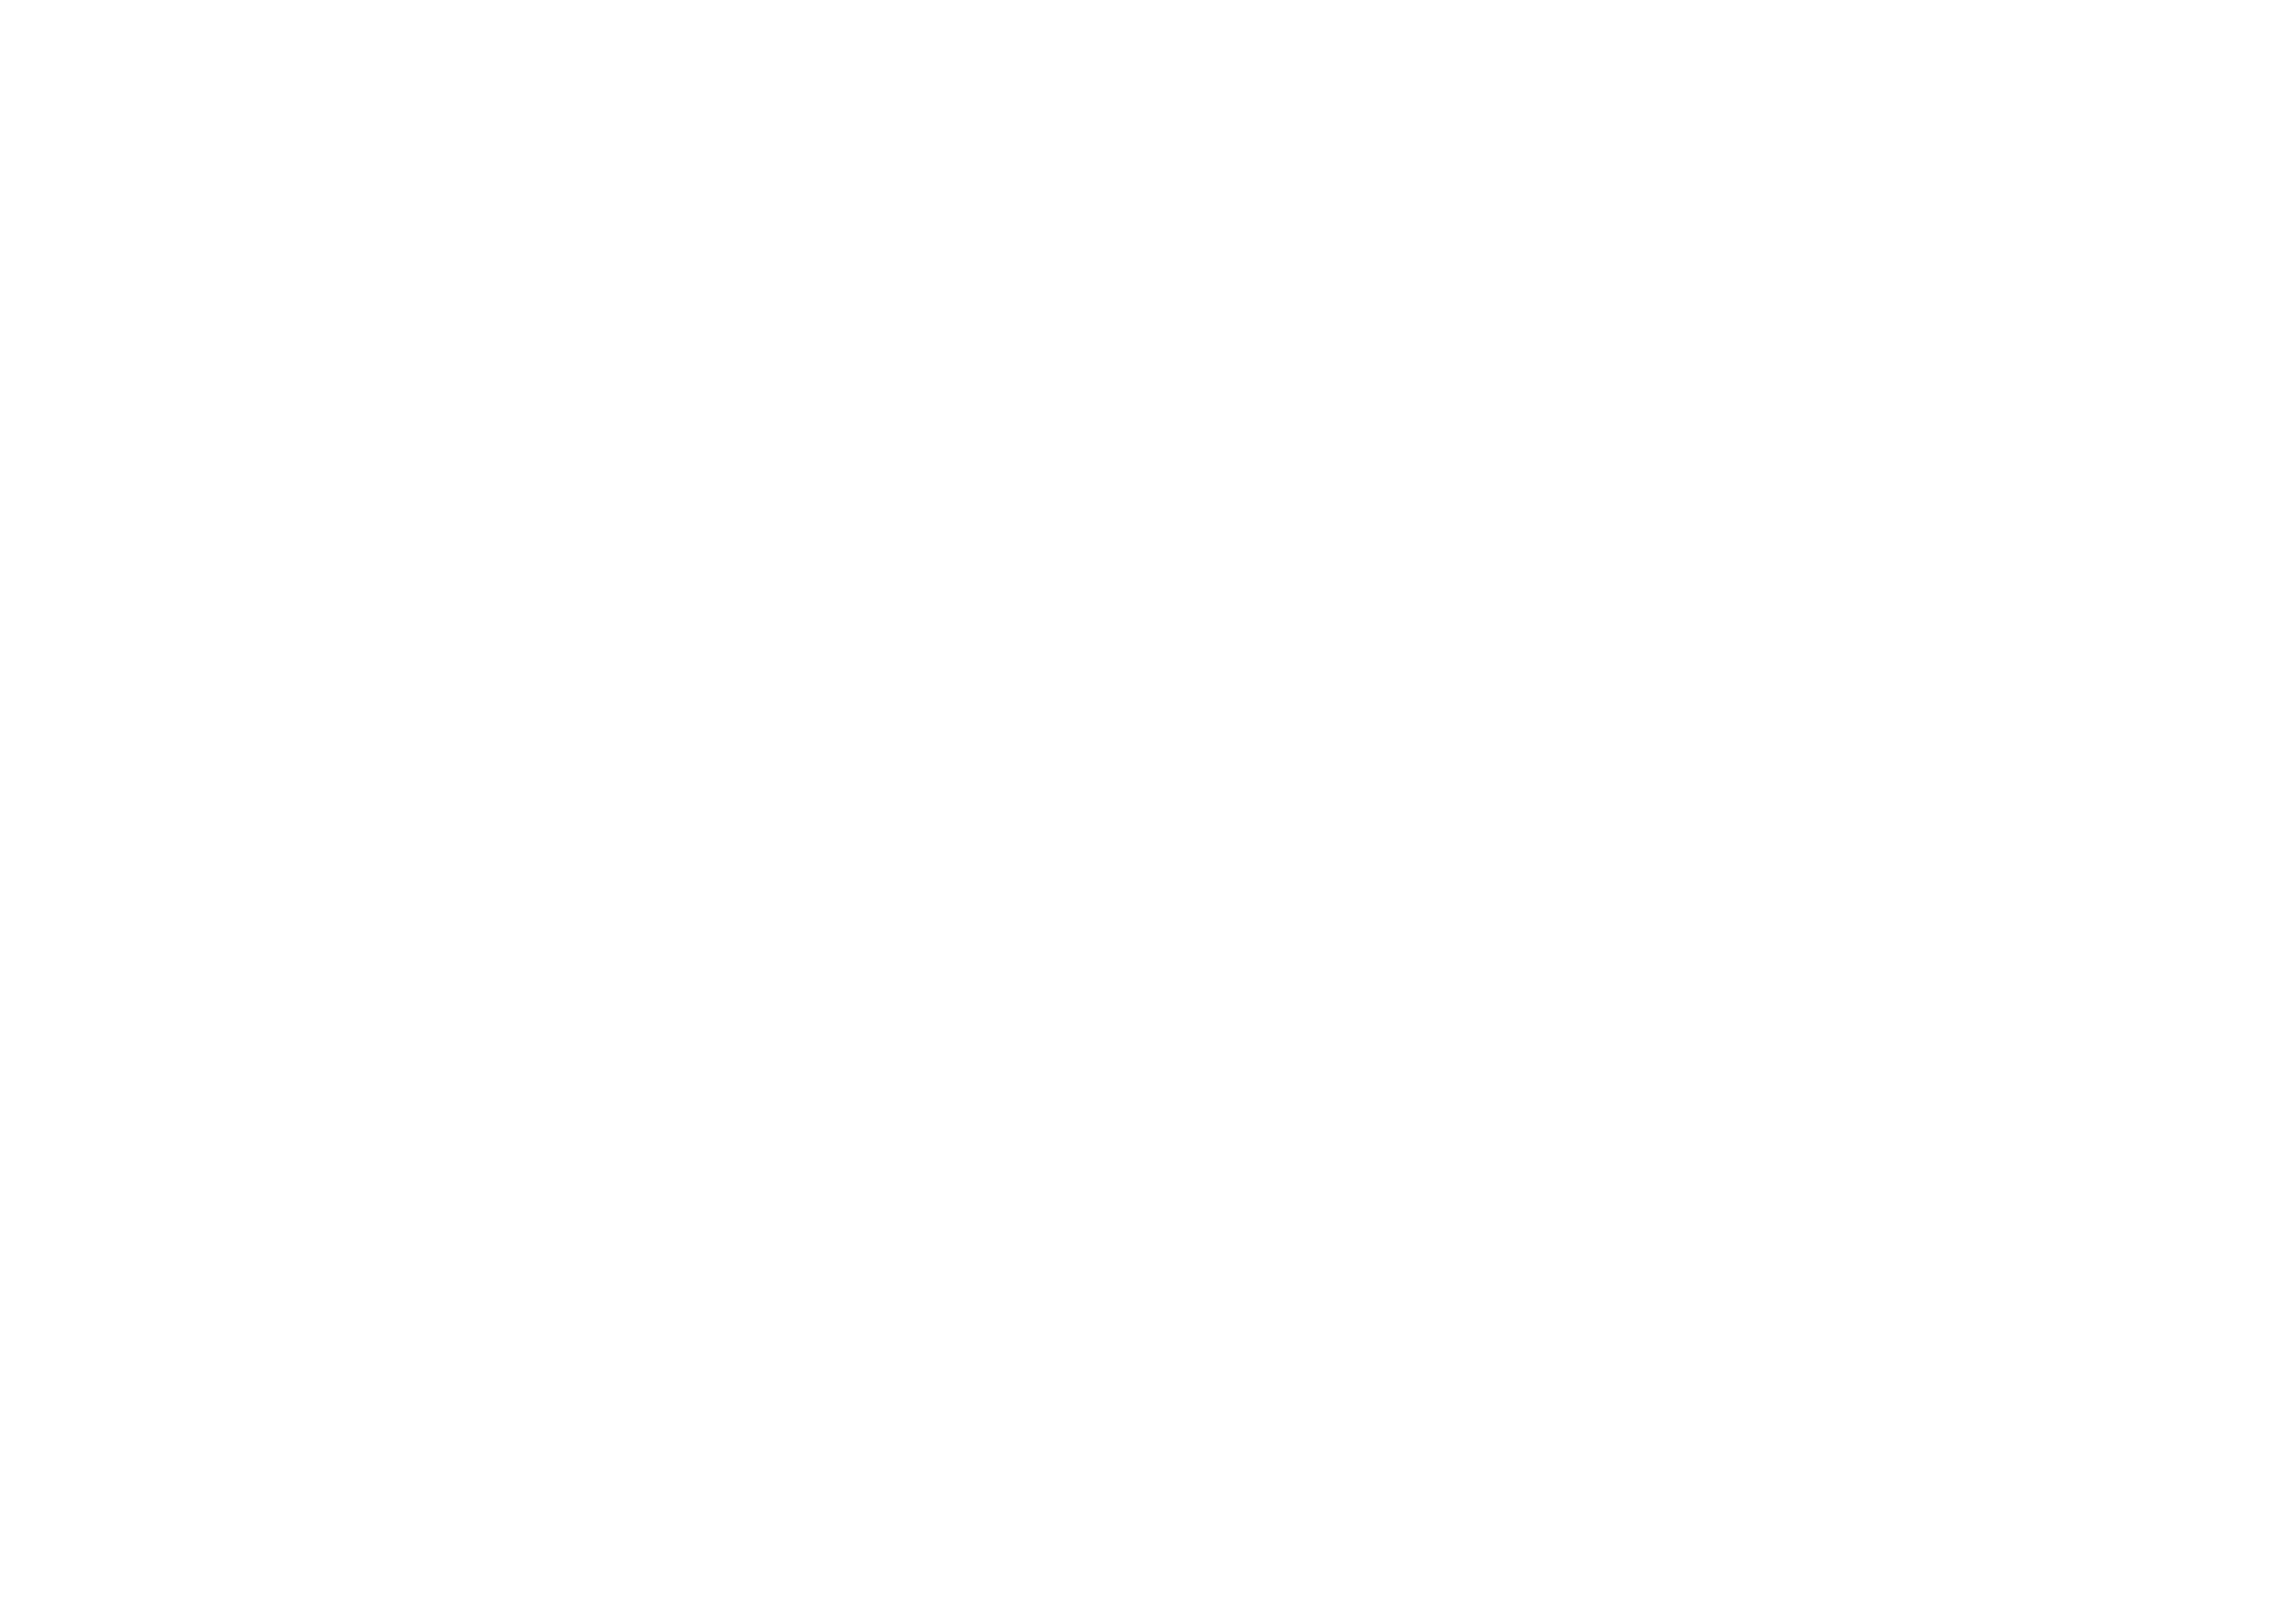 Daily Box